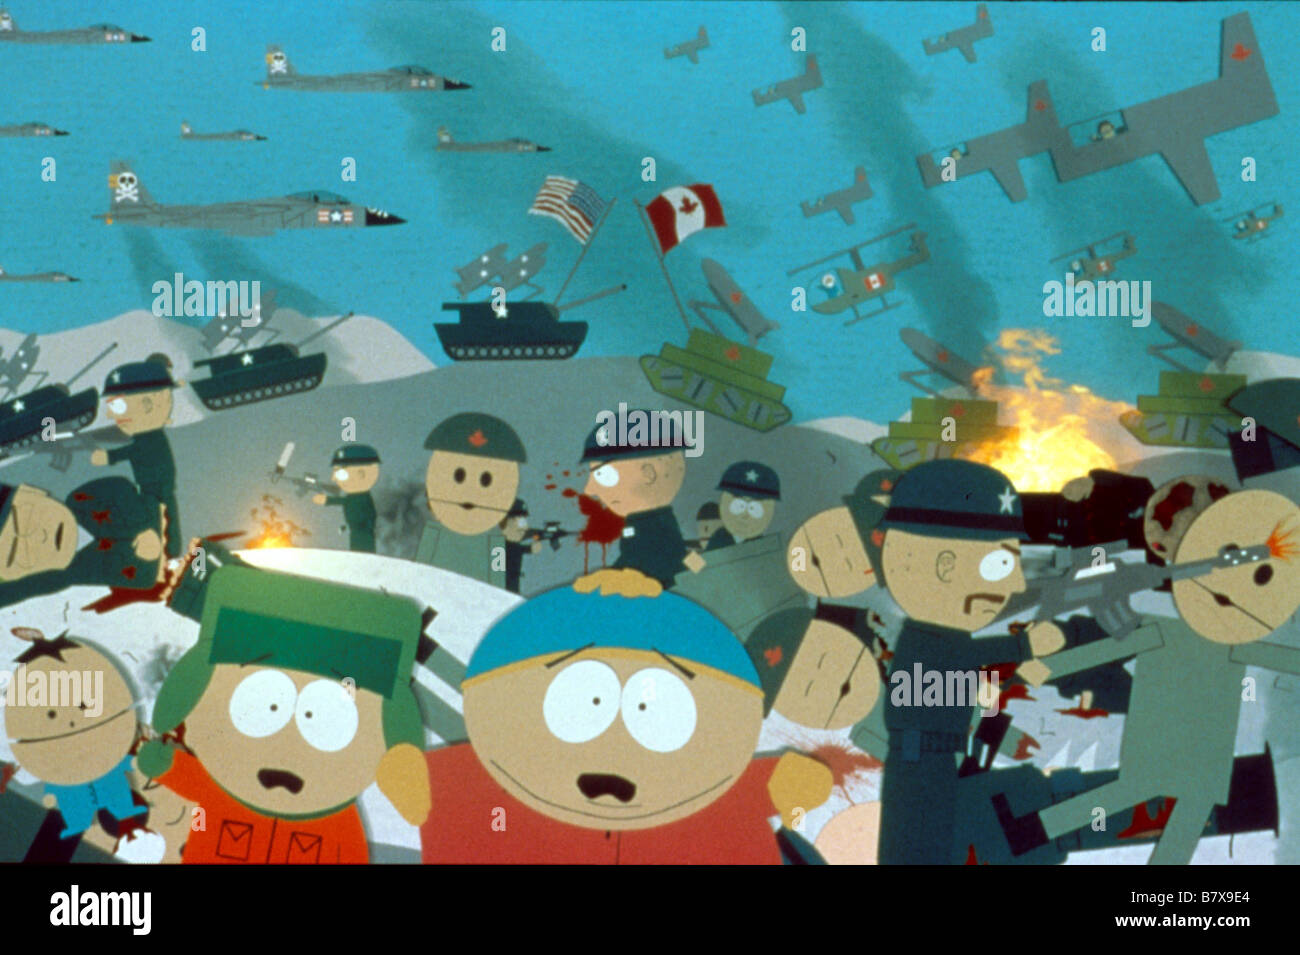 South Park South Park Bigger Longer and Uncut The South Park Movie